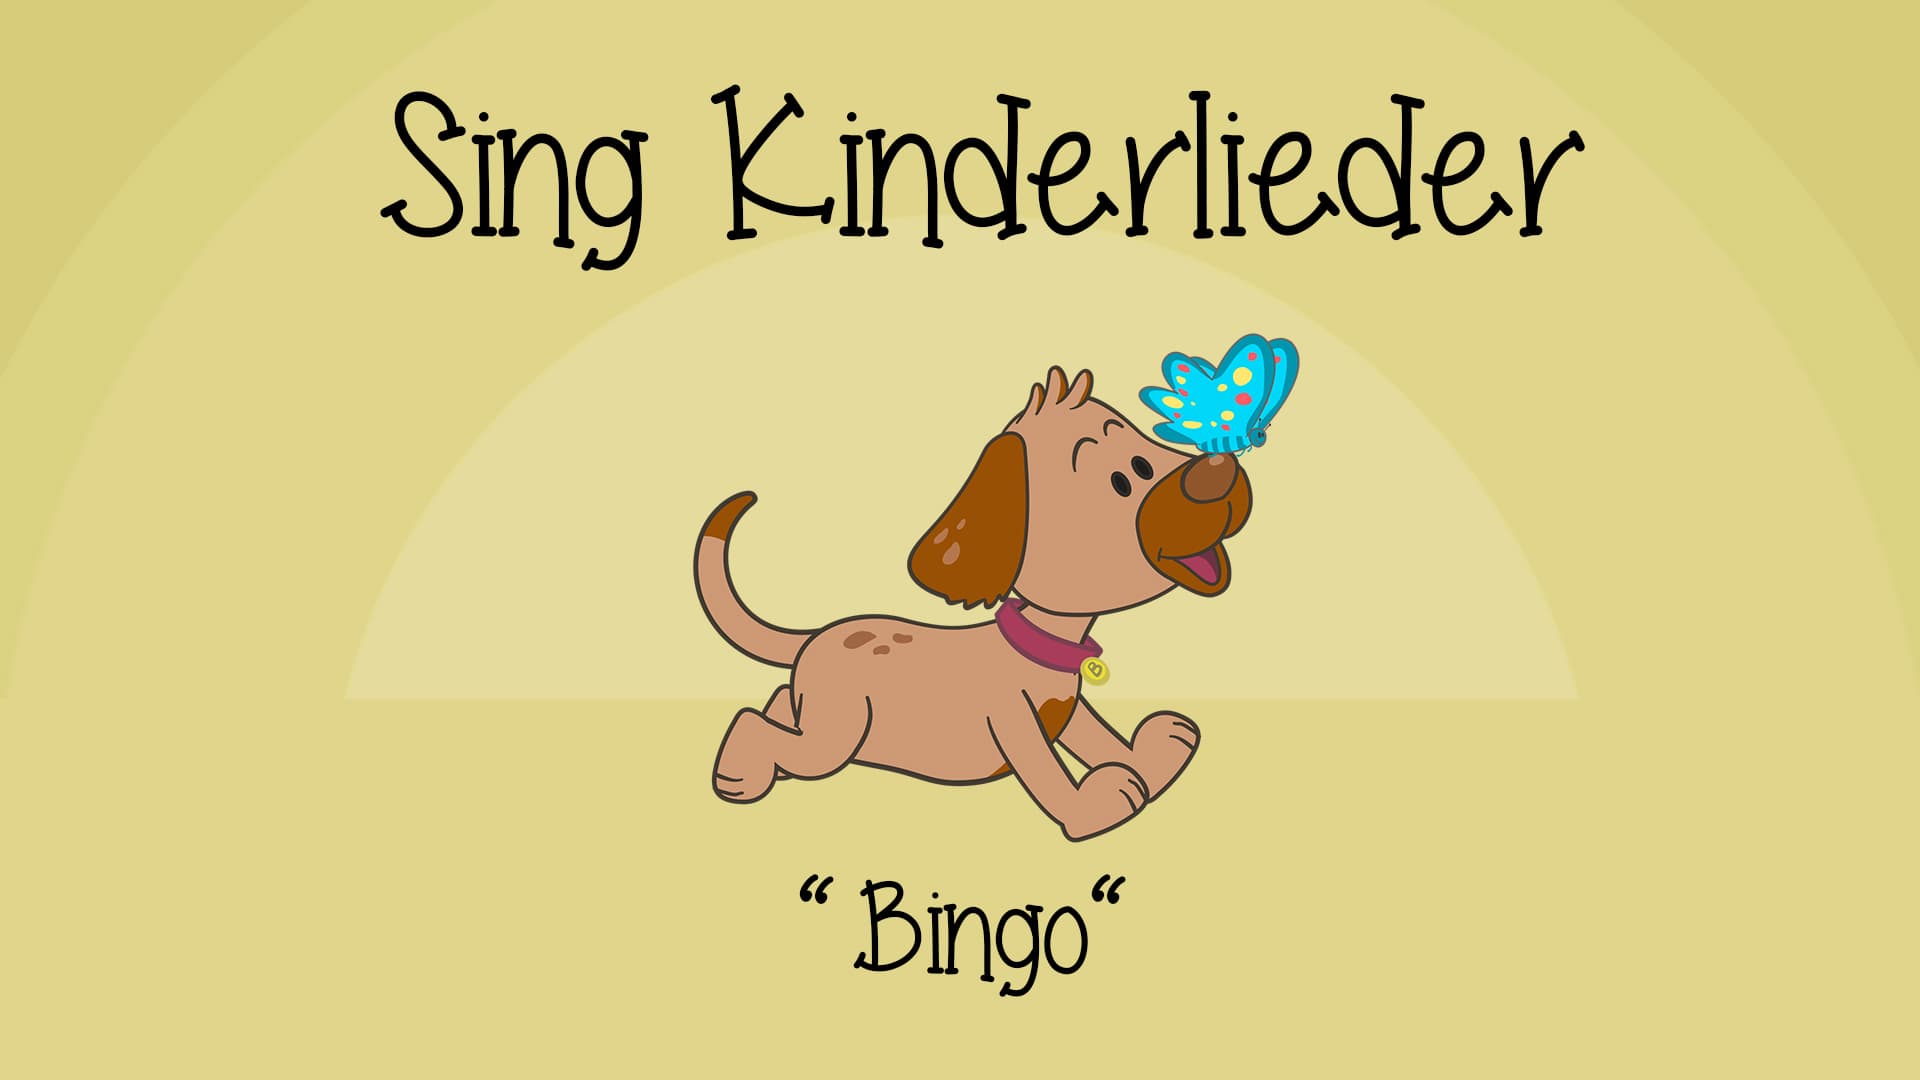 Bingo (Ein Bauer hatte einen Hund)